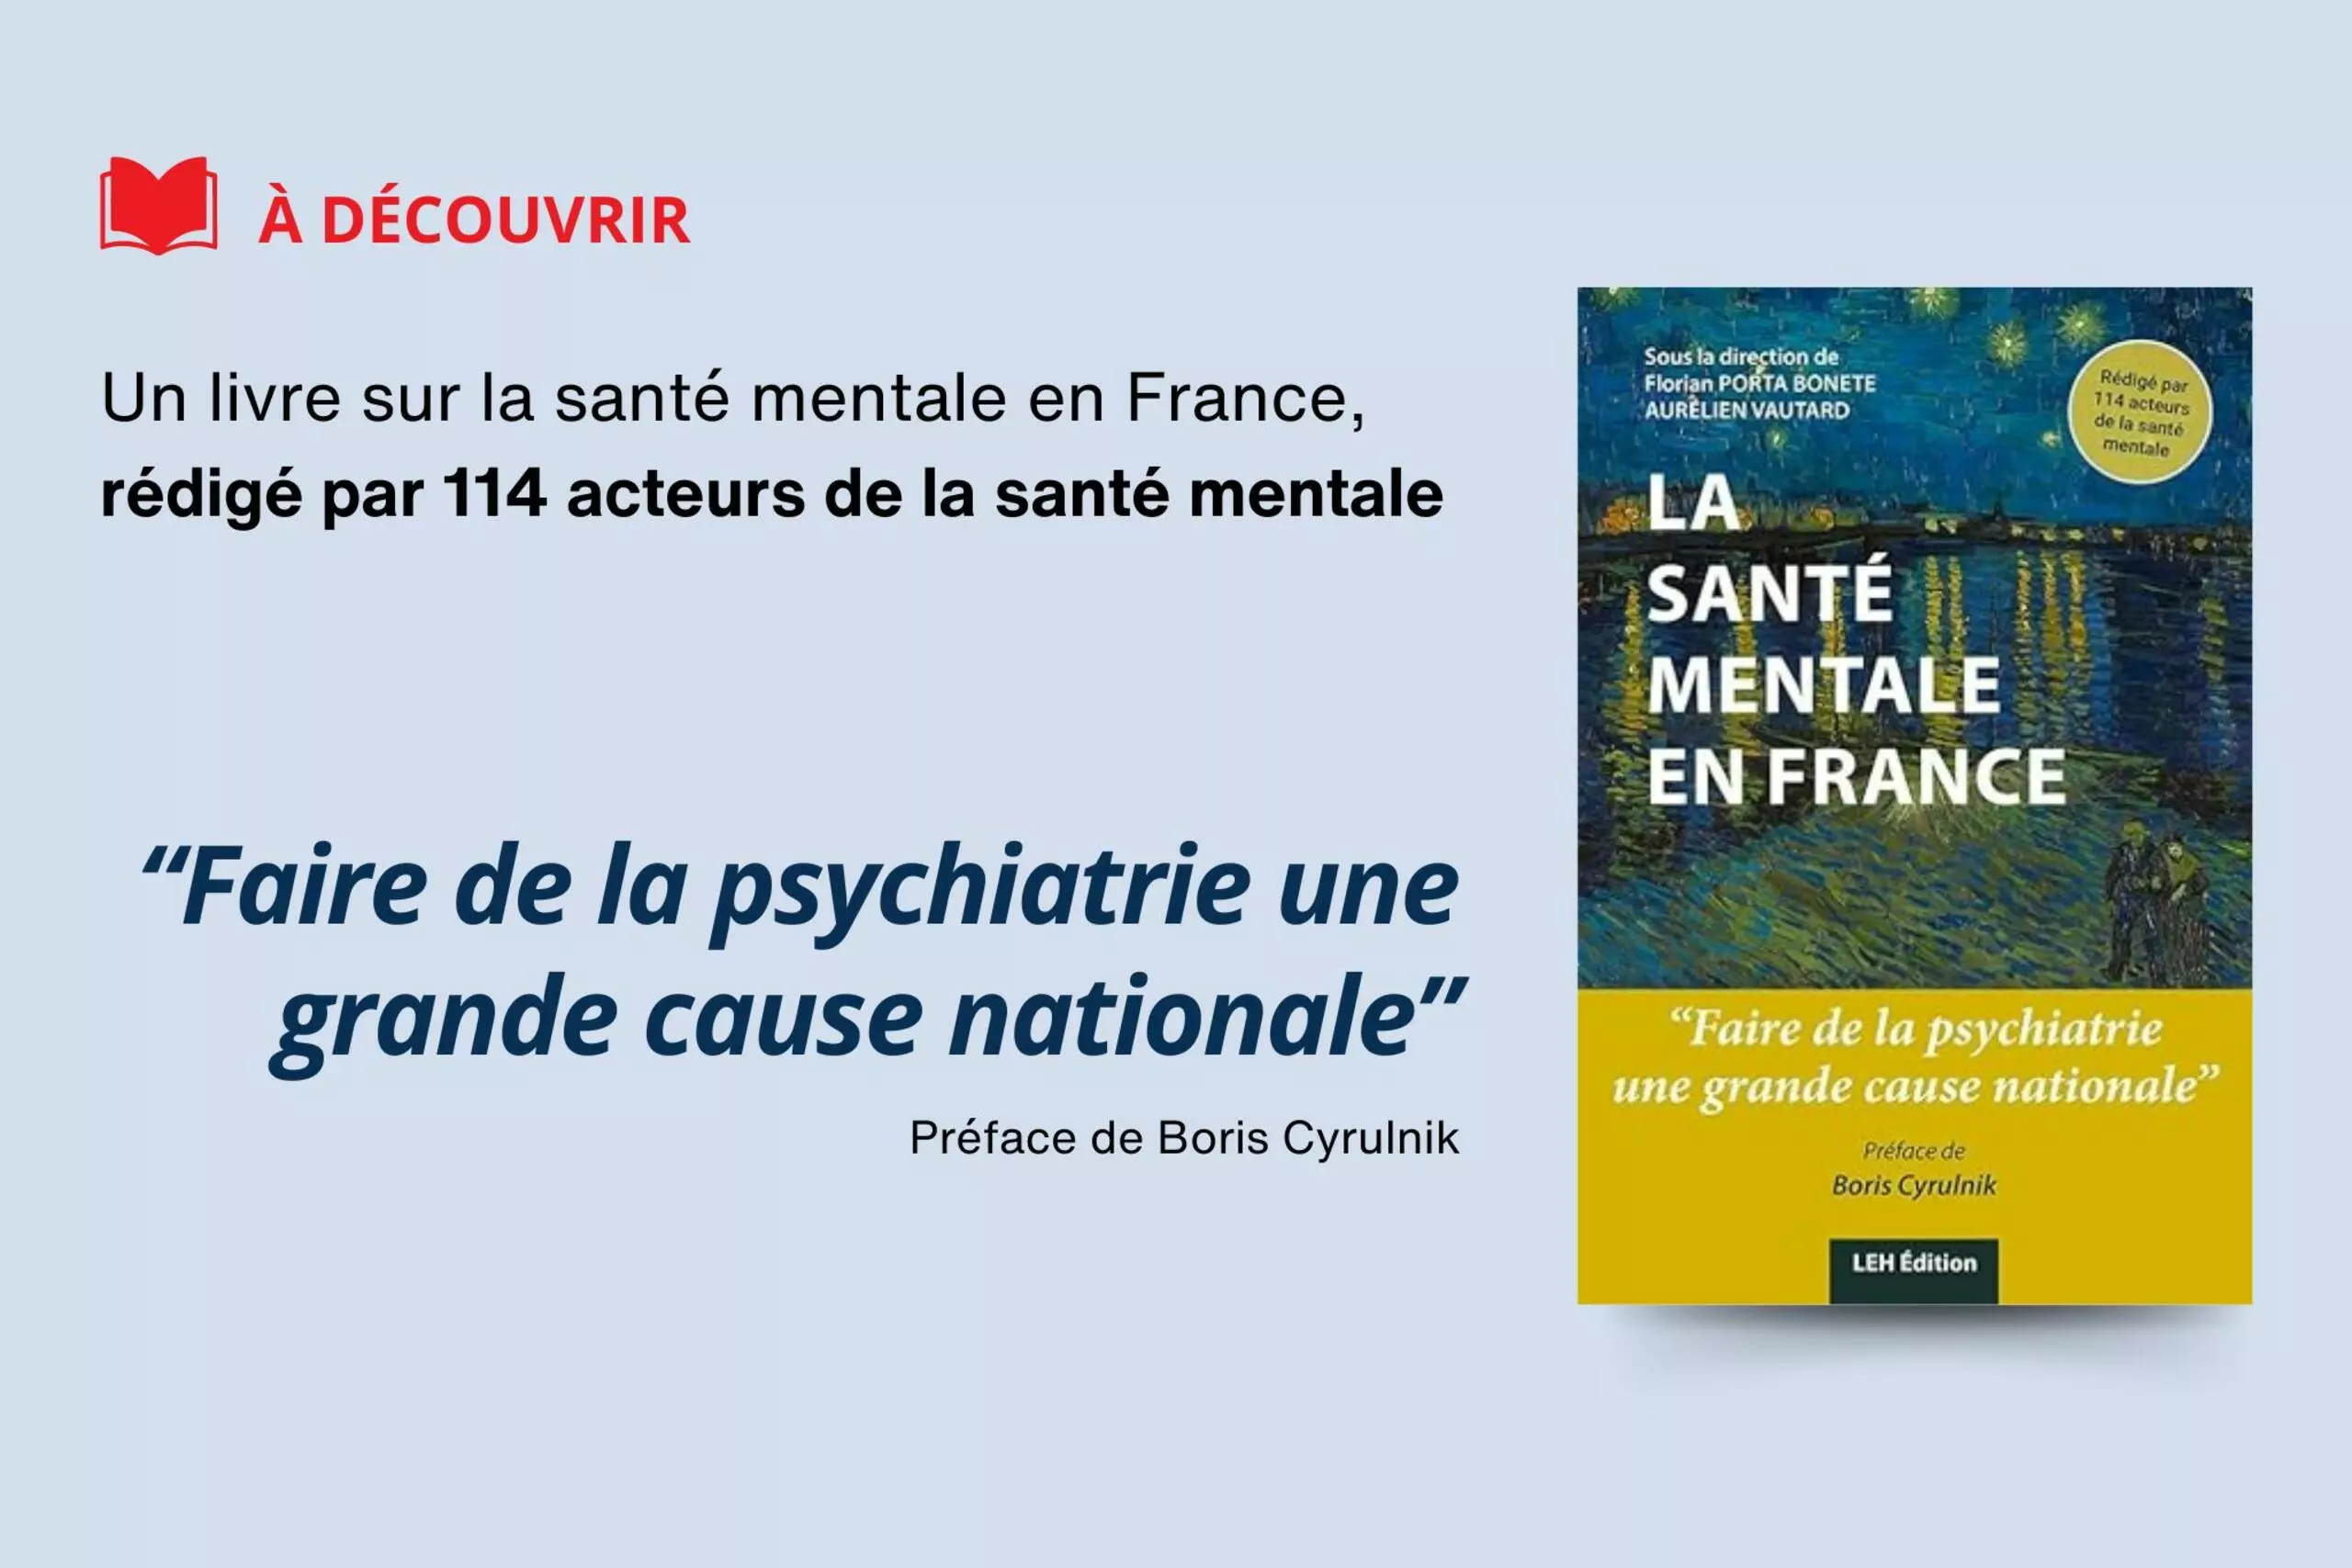 La Santé Mentale en France sous la direction de Florian Porta Bonete et Aurélien Vautard